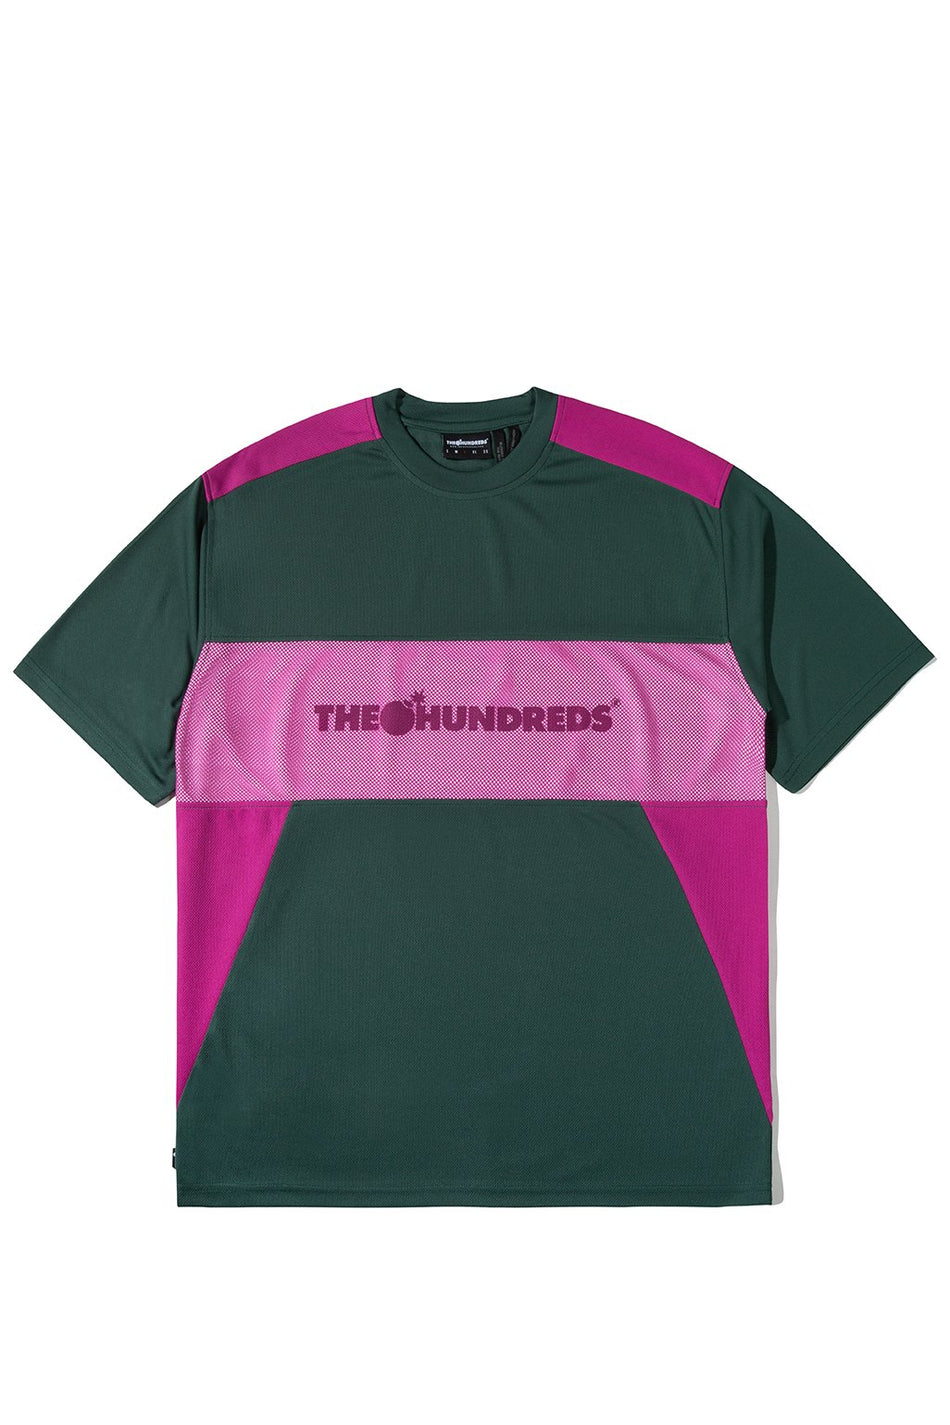 Trek T-Shirt – The Hundreds